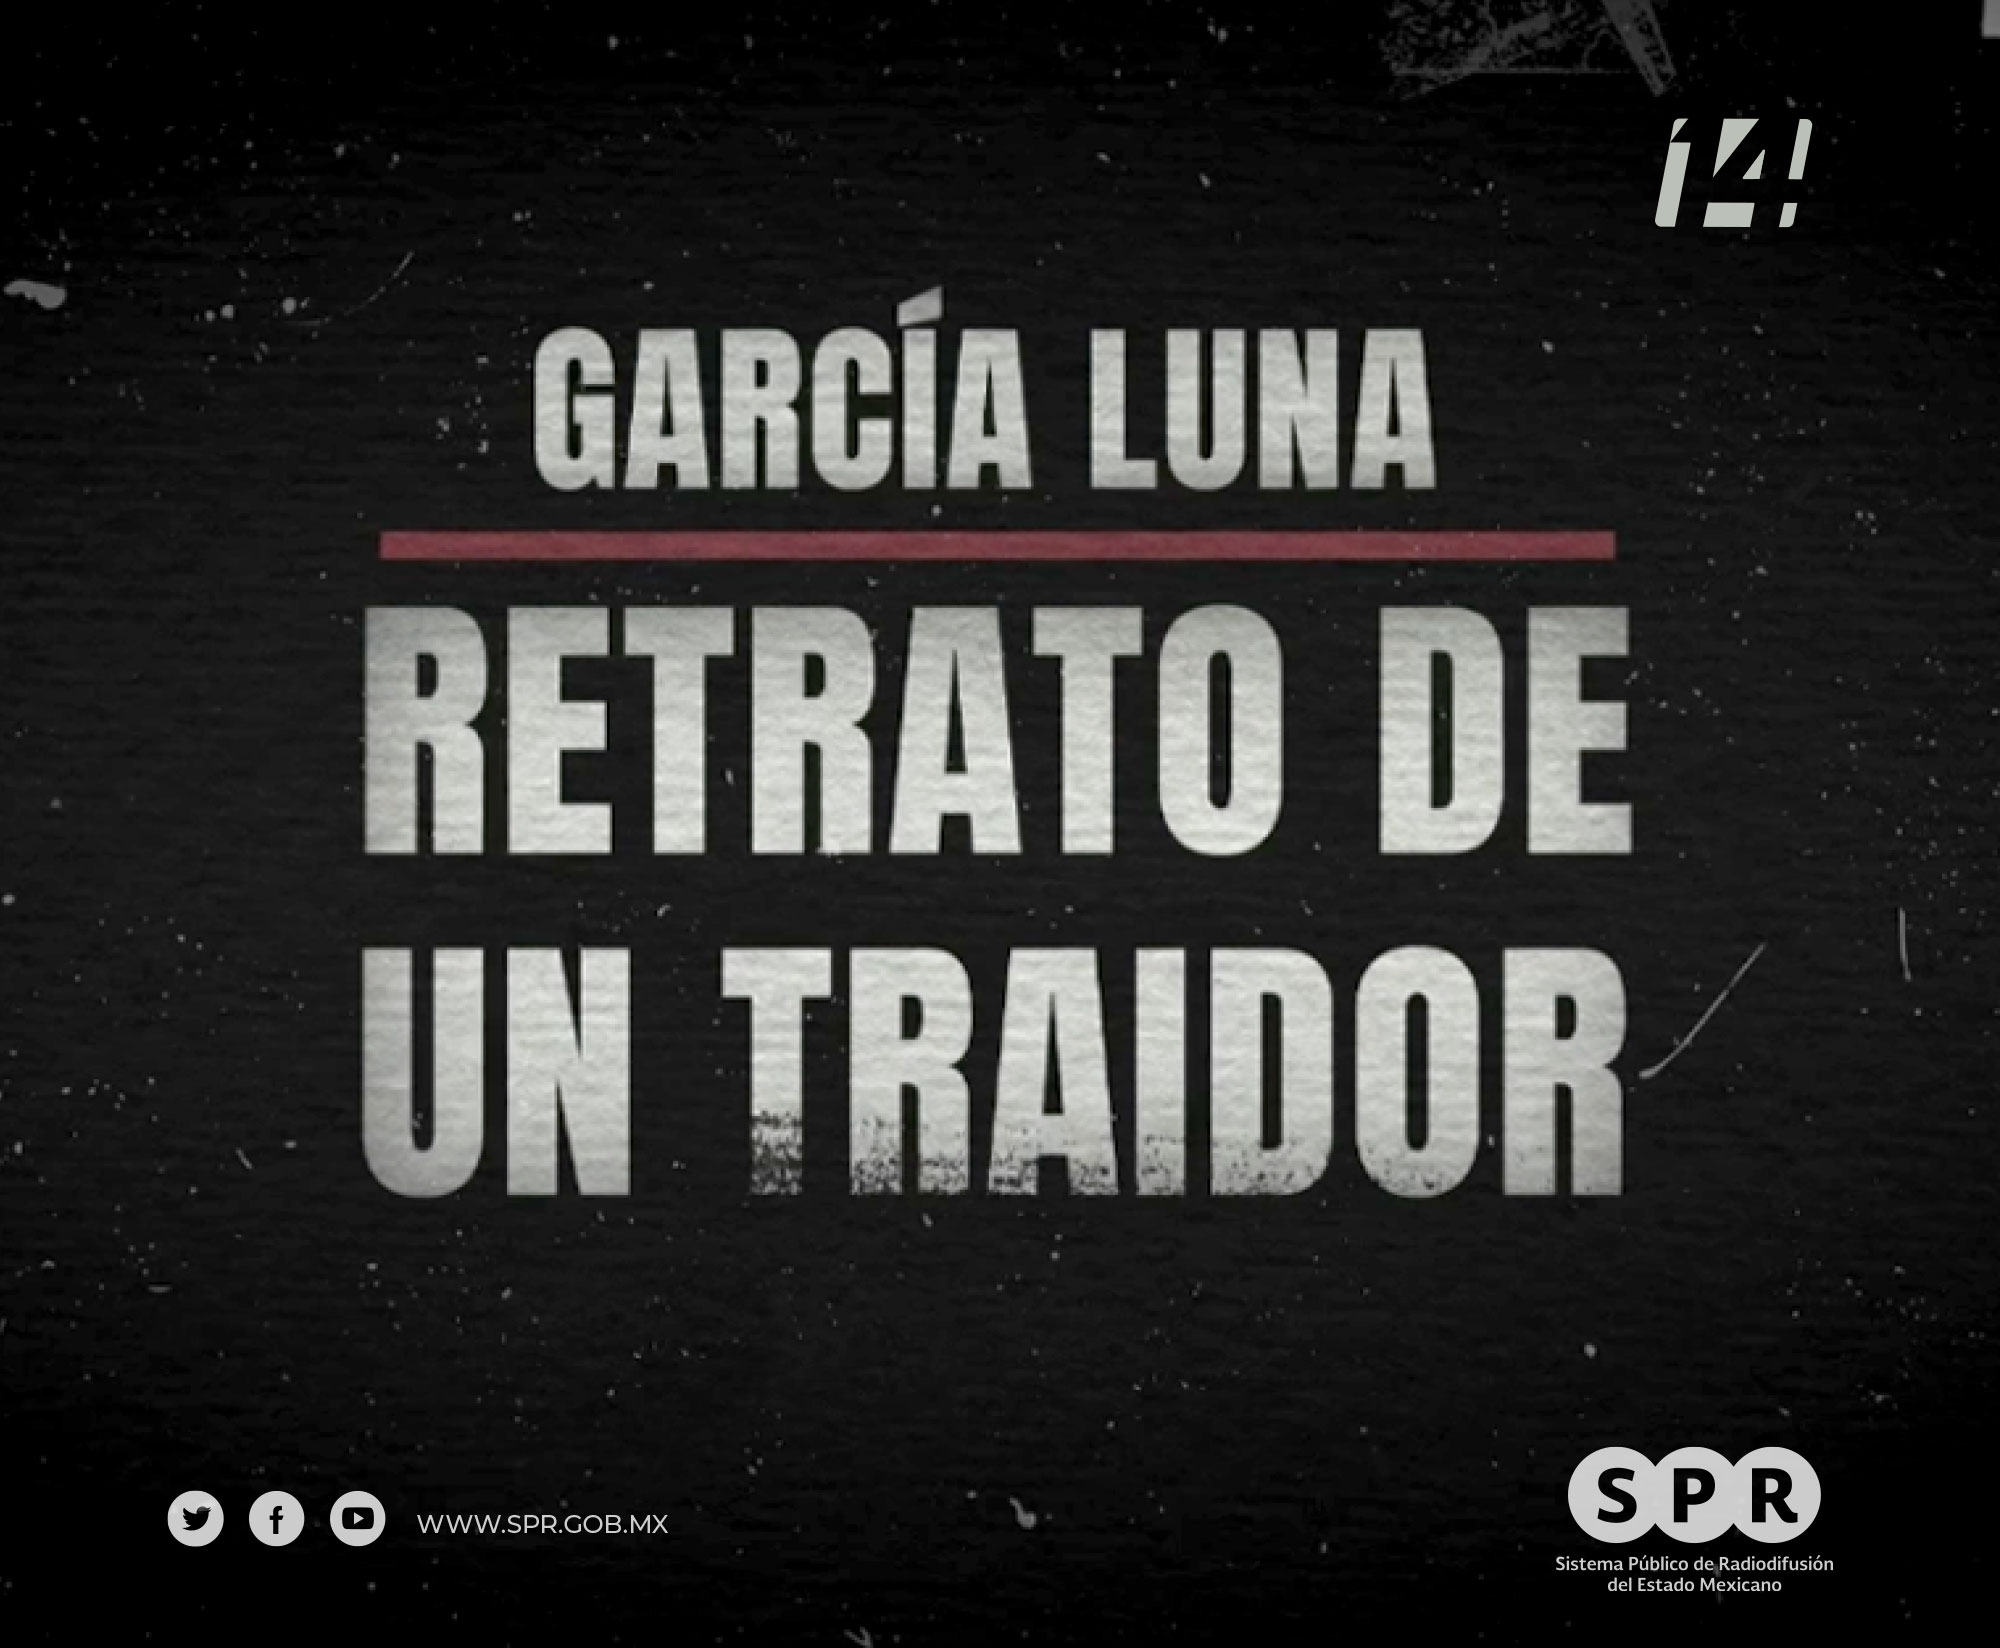 Canal Catorce estrena: “García Luna: retrato de un traidor”, su primer reportaje animado digitalmente, este domingo 30 de julio, a las 20:30h